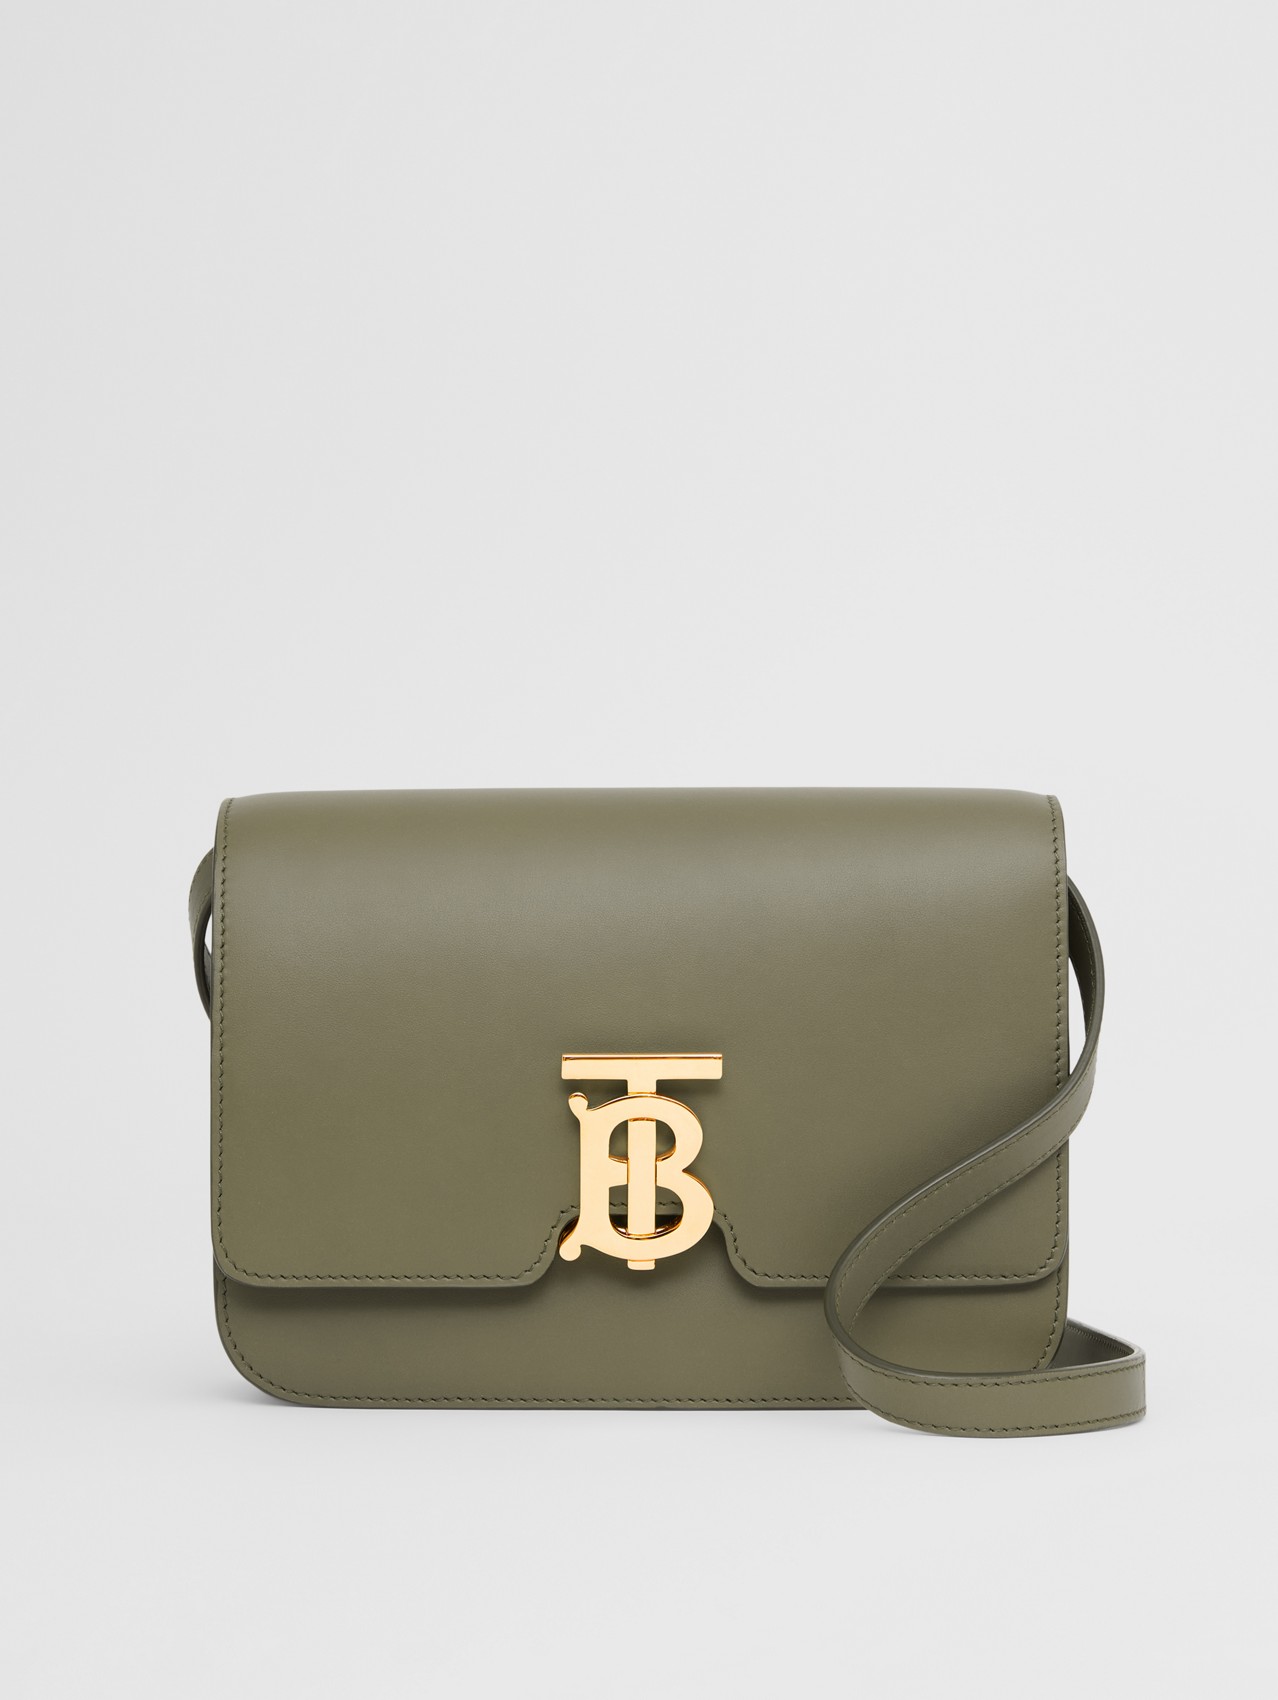 Small Leather TB Bag in Dark Fern Green